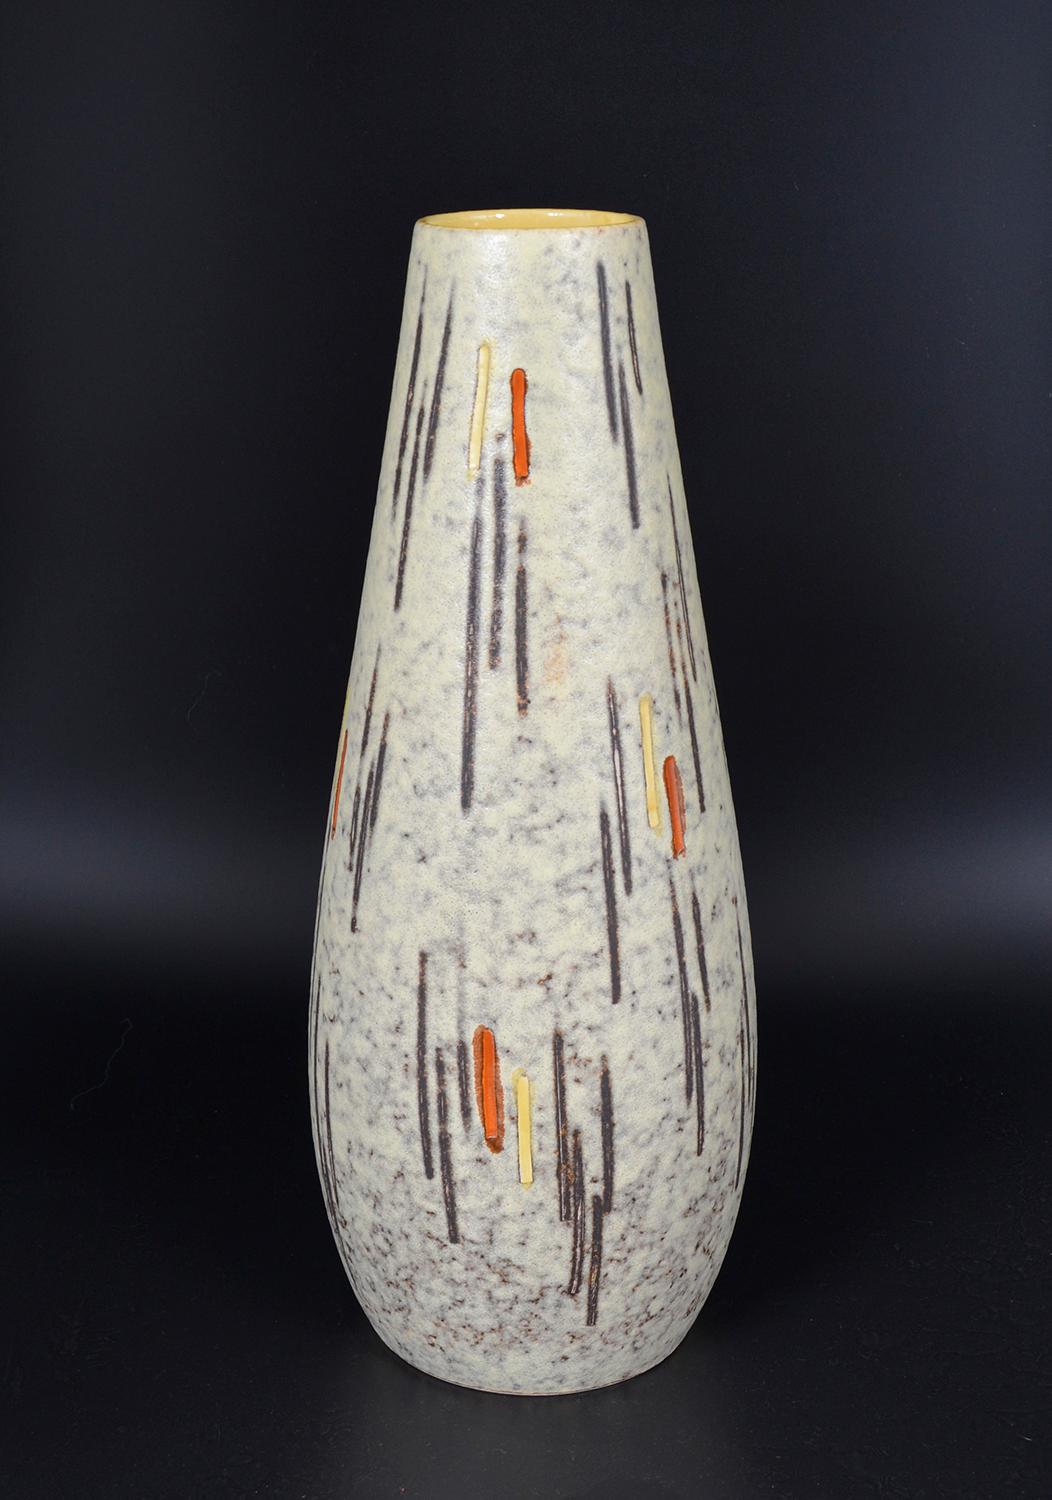 Große Scheurich-Keramikvase aus den 1950er Jahren mit cremefarbenem/weißem Lava-Finish, handbemalt mit schwarzen, orangefarbenen und gelben Streifen, mit einem gelben Zettel im Inneren der Vase. Zwei Aufkleber: Scheurich und Handgemalt in gutem